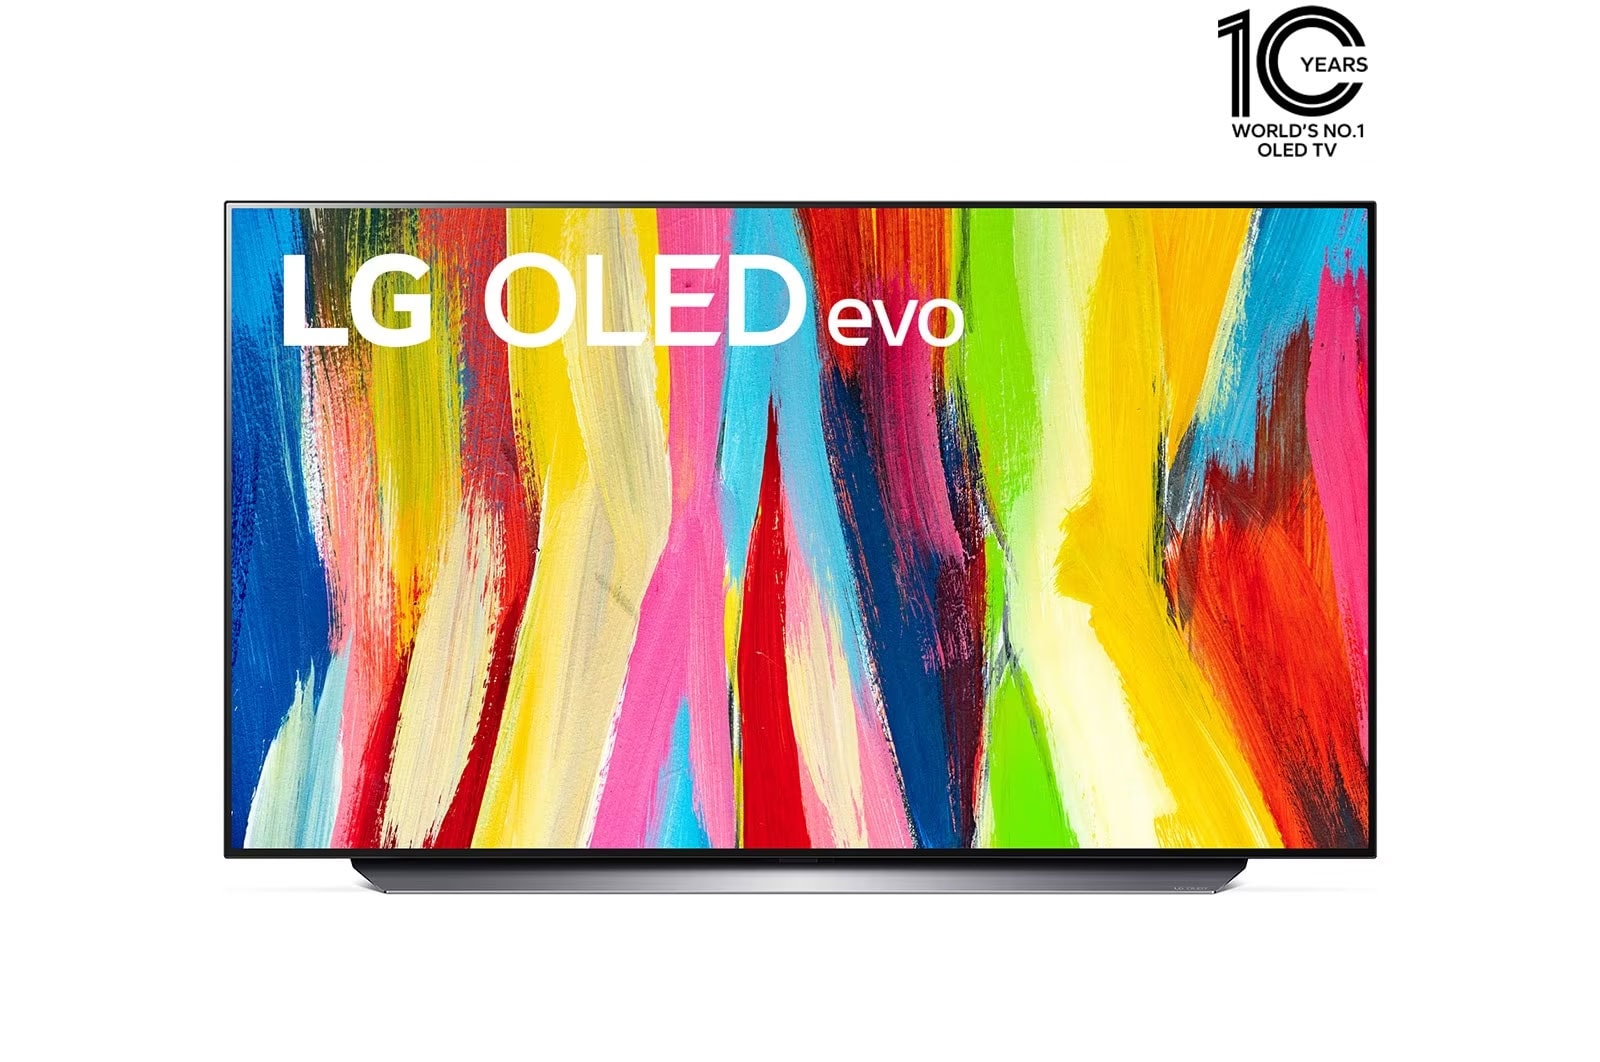 LG إل جي أوليد 4K تلفاز ذكي 48 بوصة السلسة C2, معالج ألفا 9 الجيل الخامس, جي-سينك, وفري سينك للألعاب ومعدل إستجابة 1 ملي ثانية., OLED48C26LA